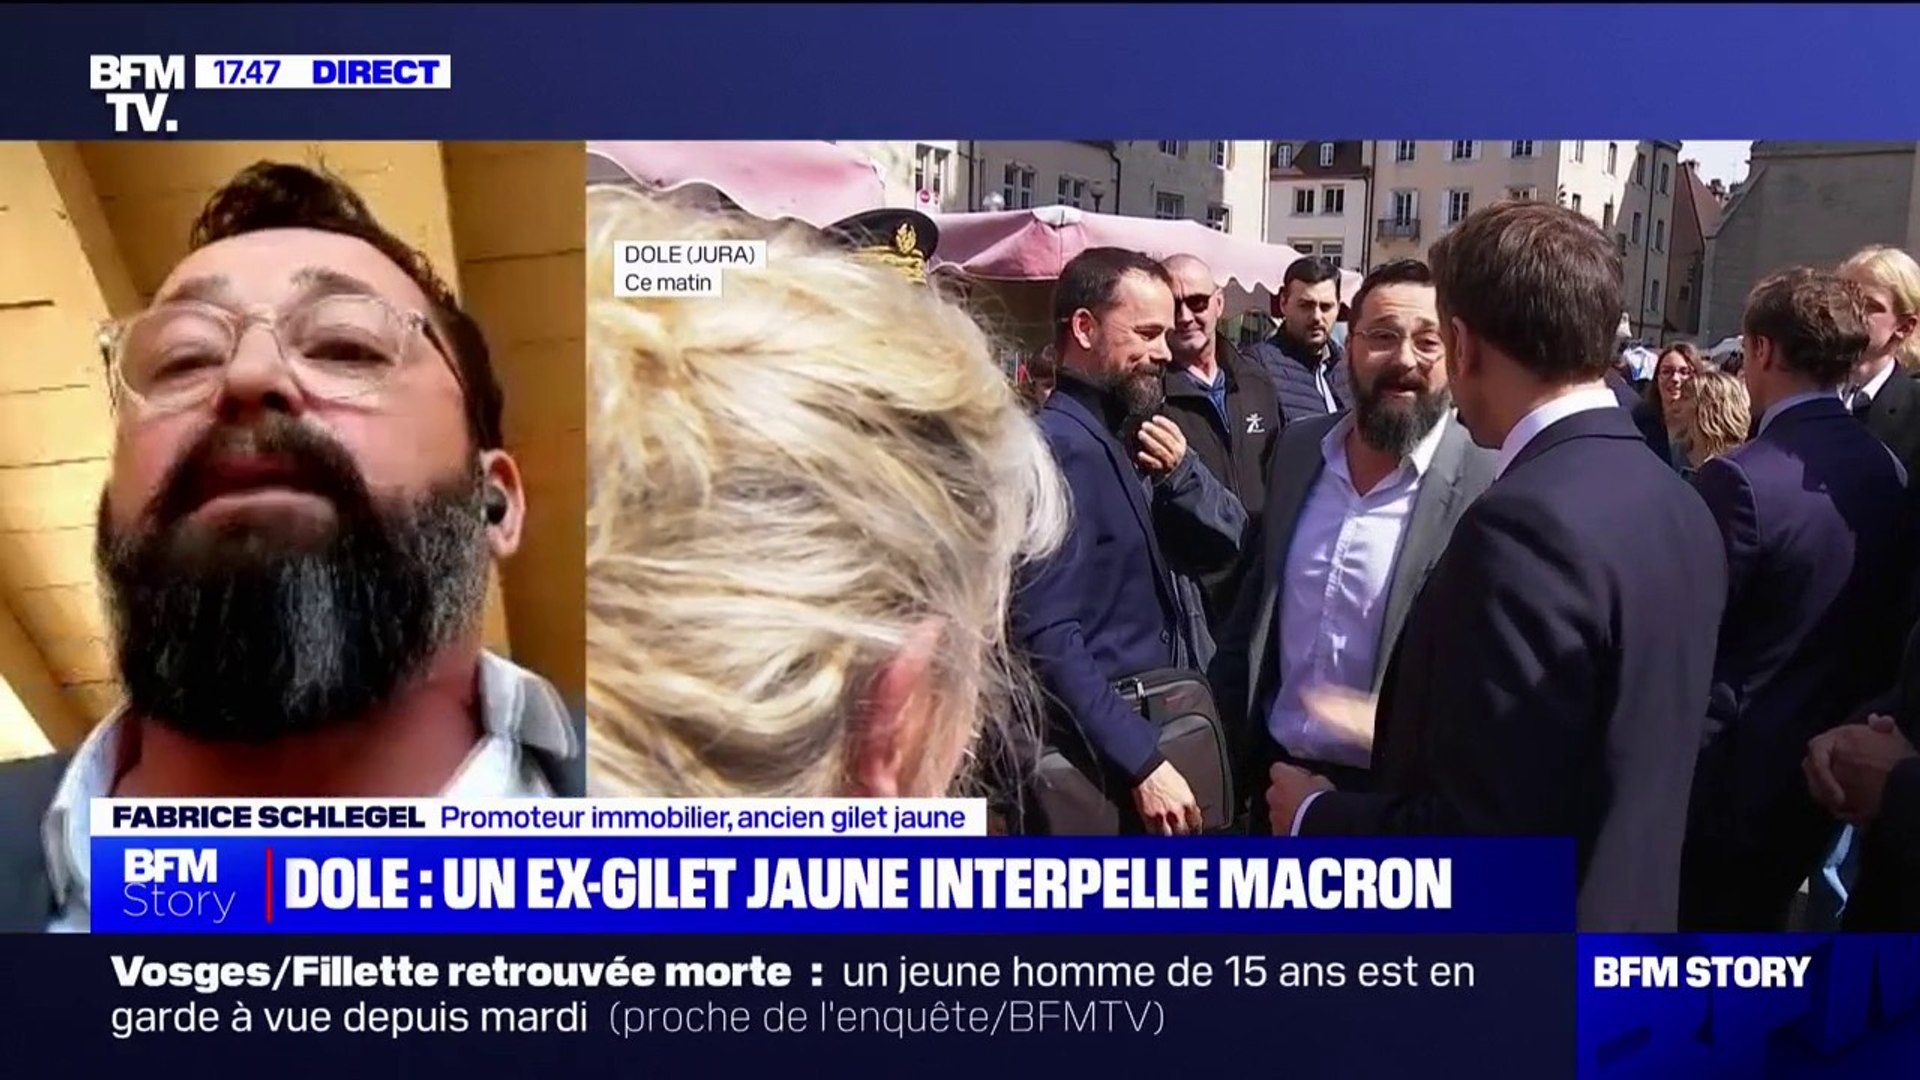 C'est une espèce de thérapie, ça évite d'être aigri", Fabrice Schlegel, ex-gilet  jaune, a interpellé Emmanuel Macron à Dole - Vidéo Dailymotion